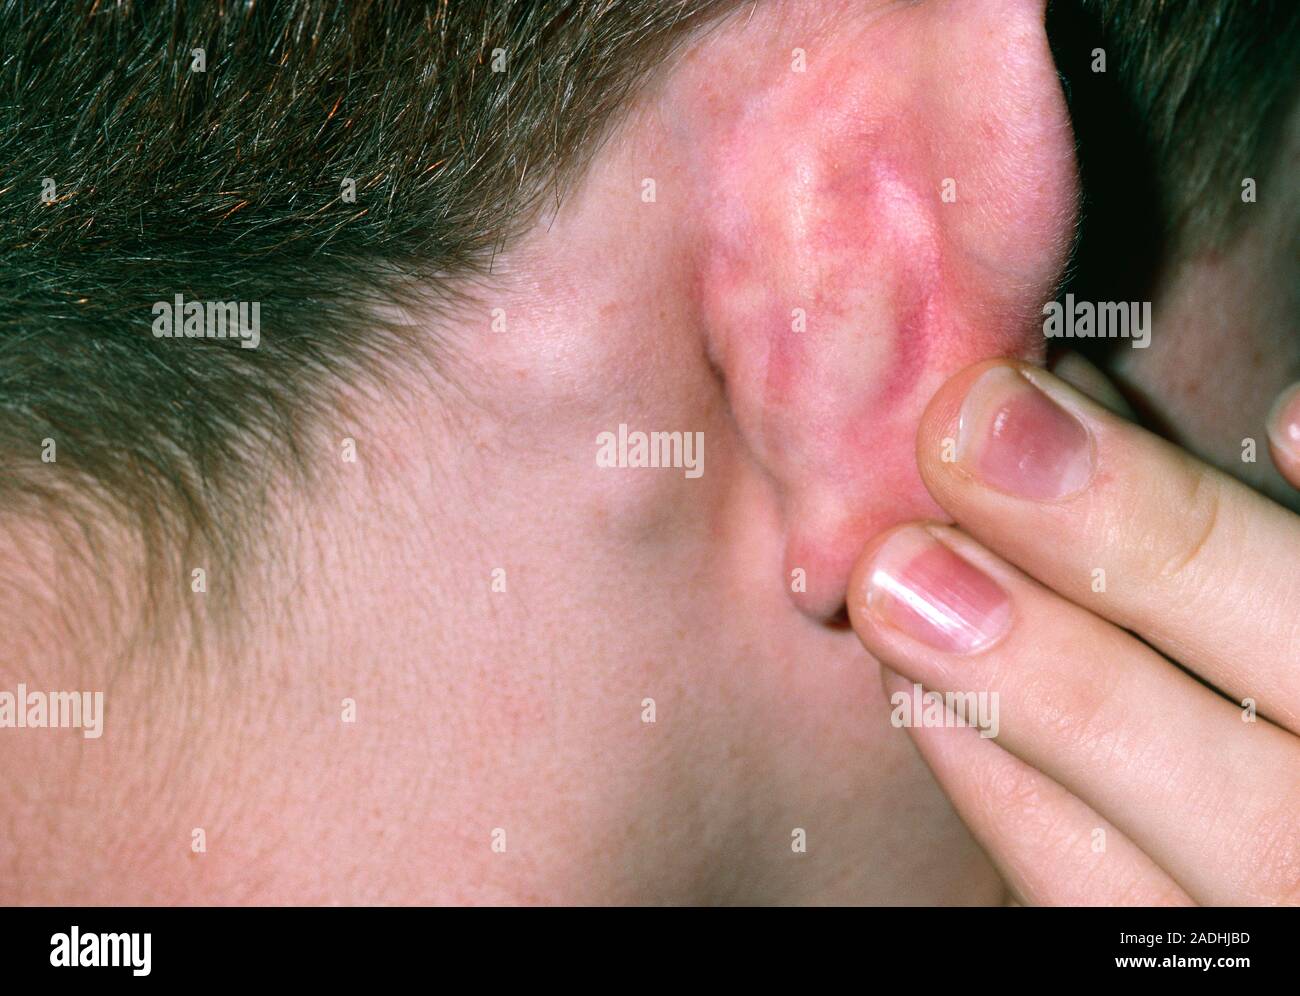 La lymphadénopathie. Gonflement des ganglions (adénopathie) derrière l' oreille d'un enfant. Gonflement des ganglions sont causés par  l'inflammation des ganglions lymphatiques, qui font partie Photo Stock -  Alamy